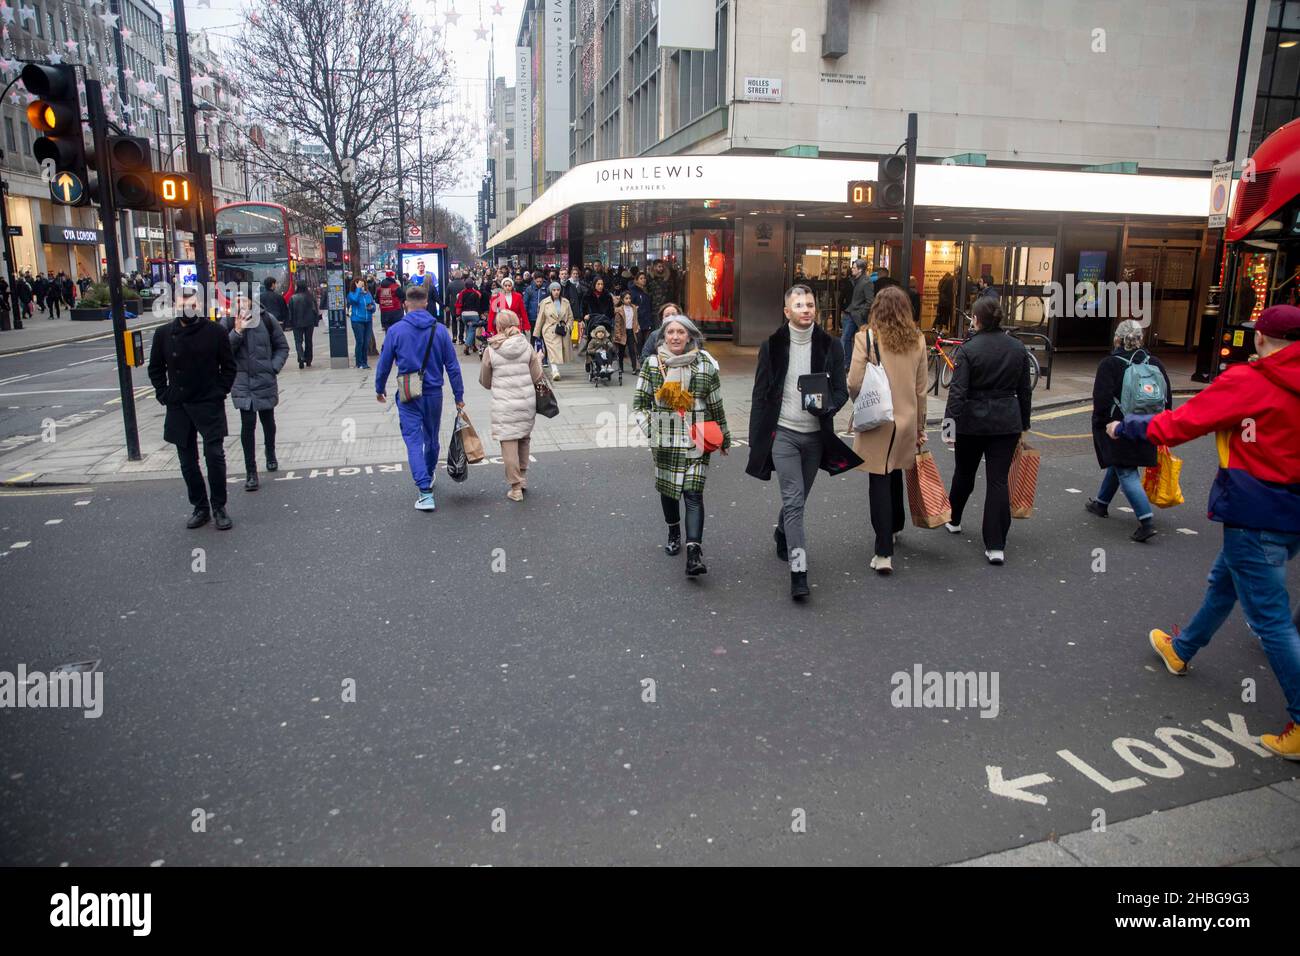 pic shows: Pas de monde en dehors de John Lewis heure de pointe samedi métro de Londres grève des travailleurs a causé un énorme surpeuplement sur les plates-formes à euston Banque D'Images